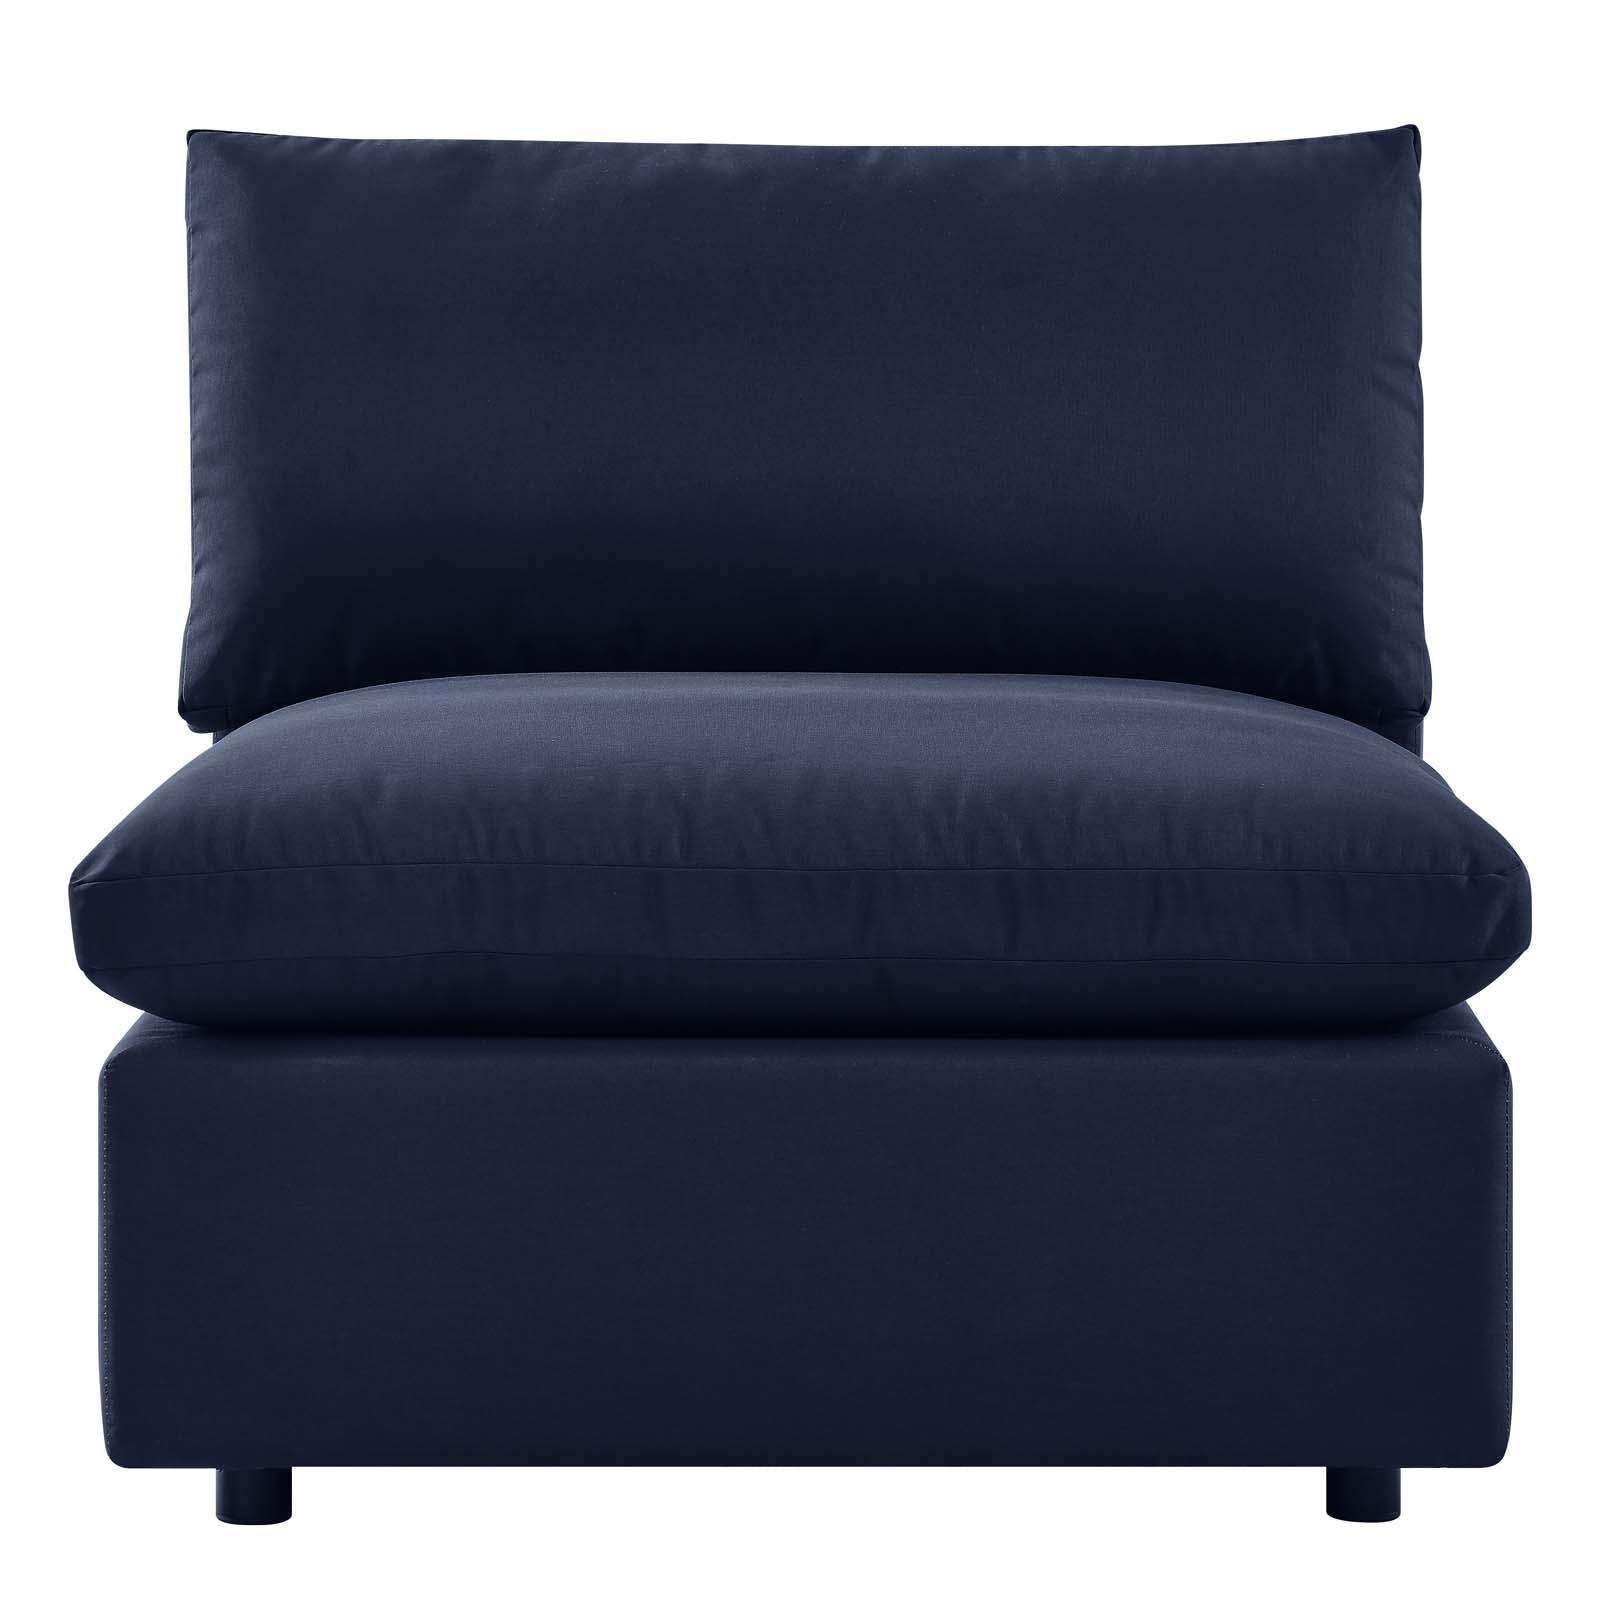 Modway Furniture Modern Commix Overstuffed Outdoor Patio Armless Chair - EEI-4902